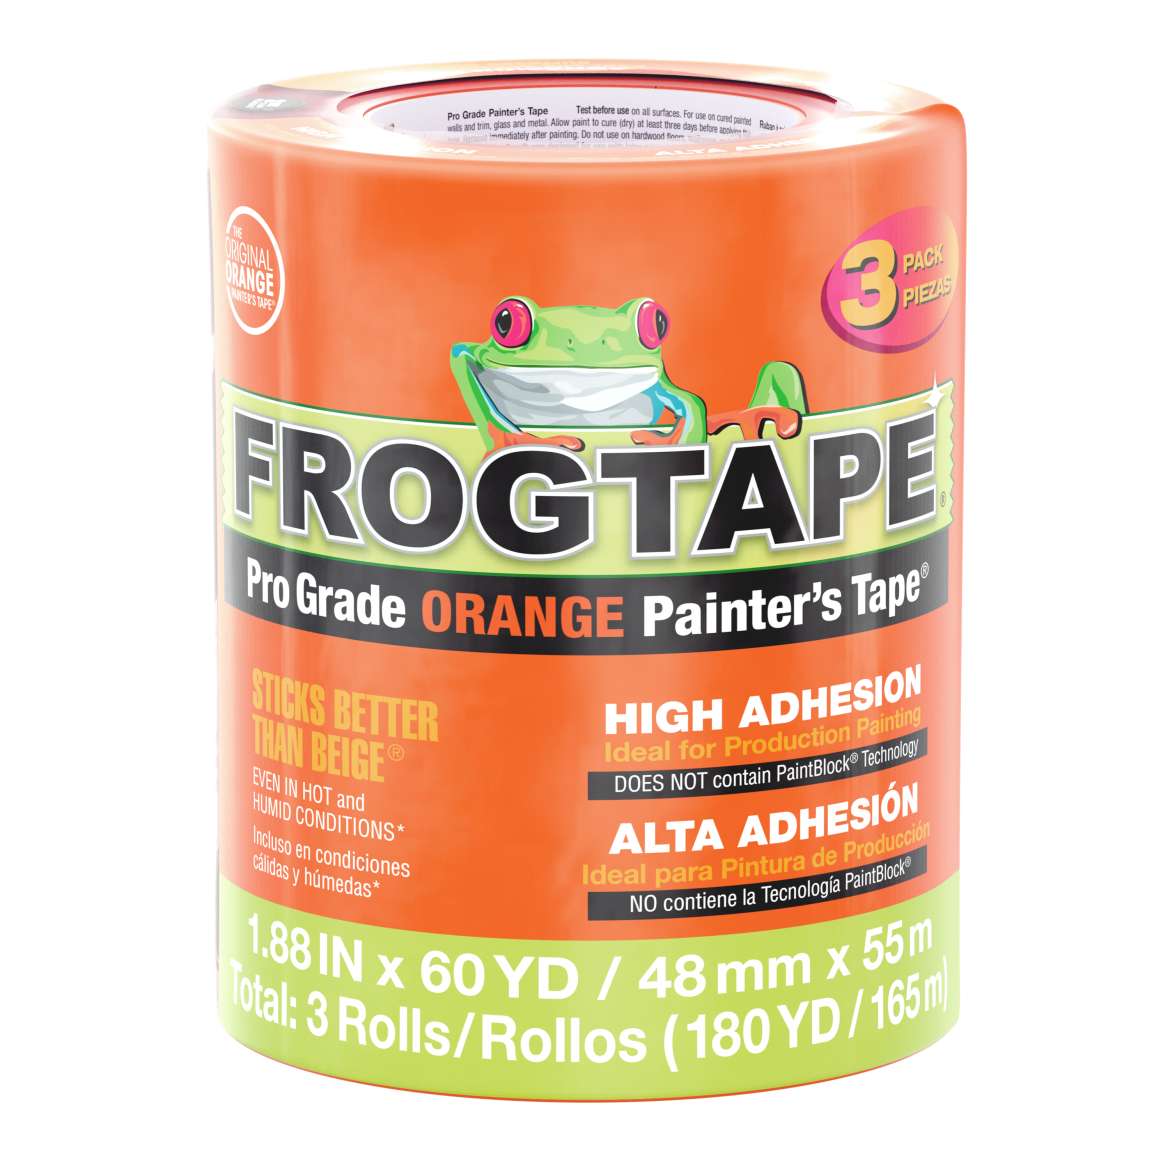 FrogTape® Pro Grade Orange Painter’s Tape® – Orange, 3 pk, 1.41 in. x 60 yd.